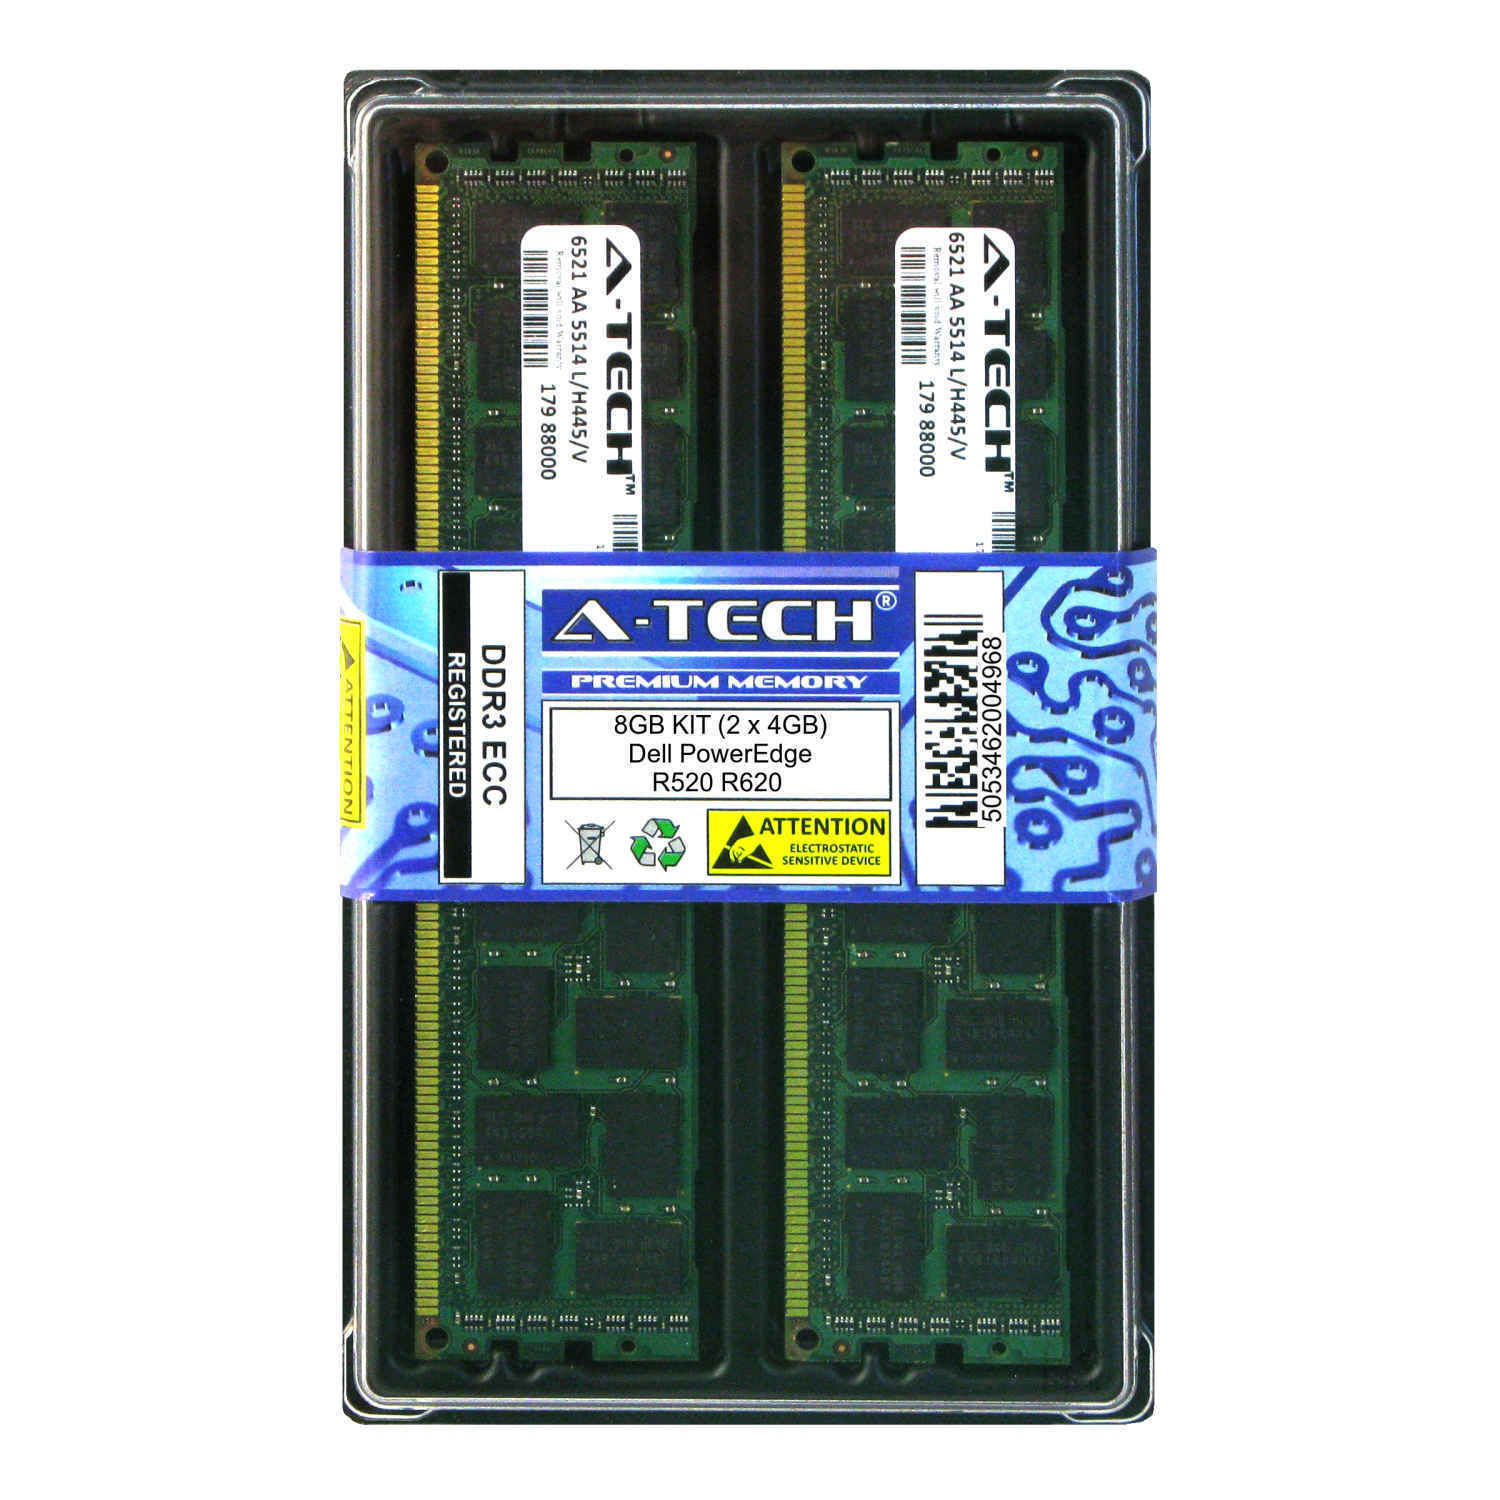 8GB KIT 2 x 4GB Dell PowerEdge R520 R620 R720 R720xd R810 PC3-8500 Ram Memory